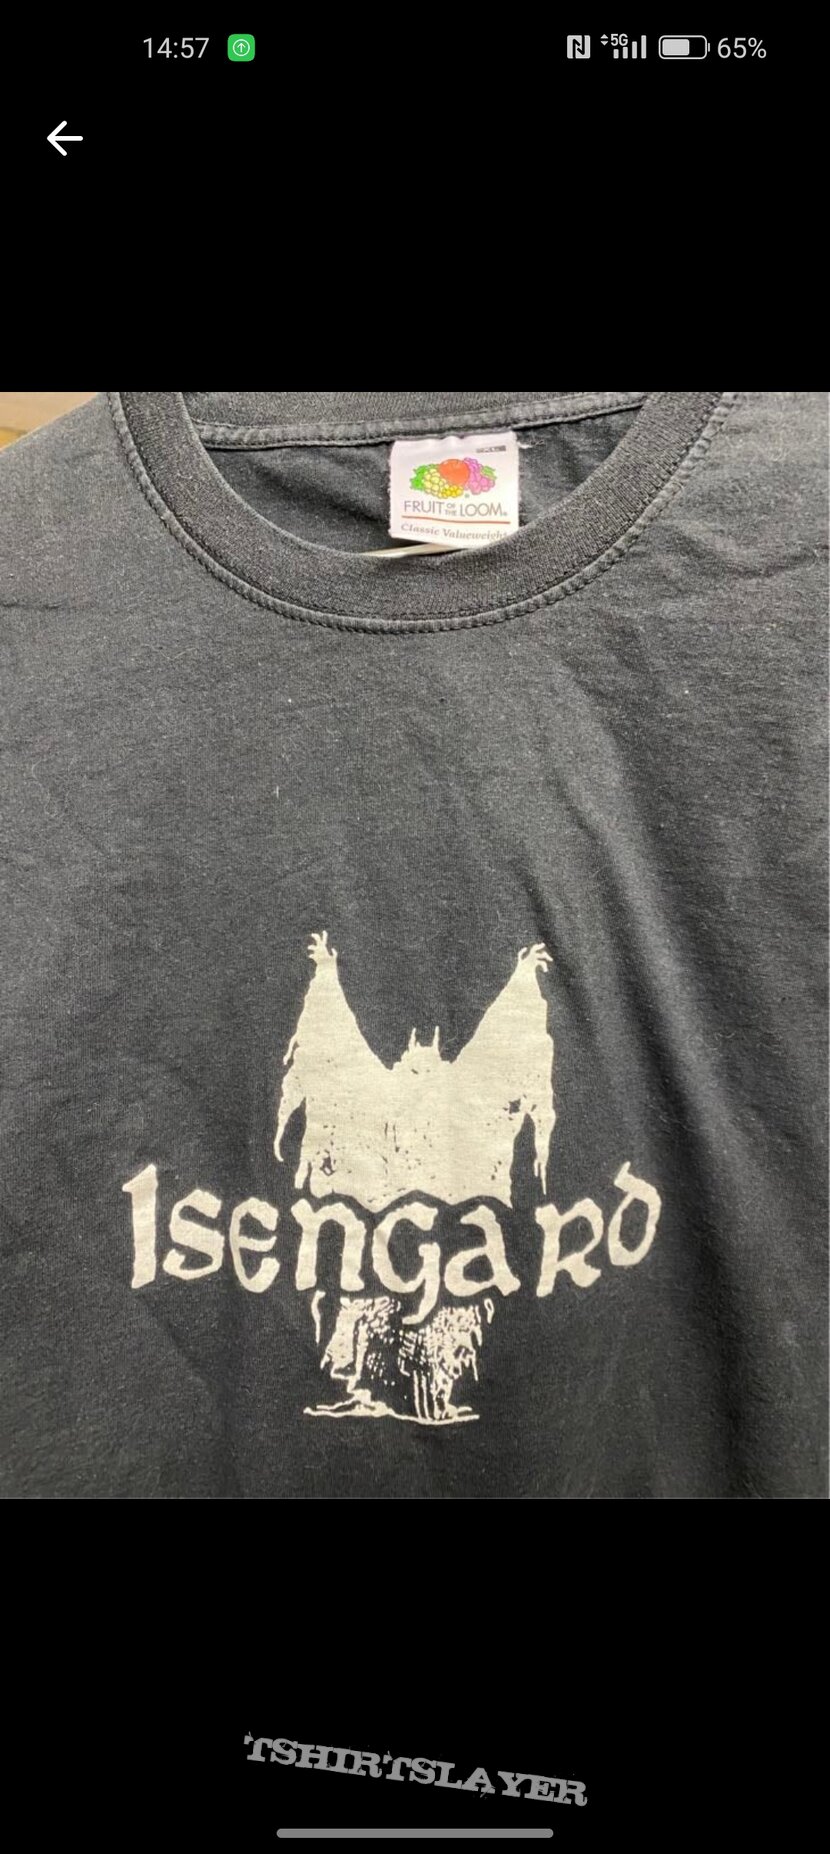 Isengard Isengrad 